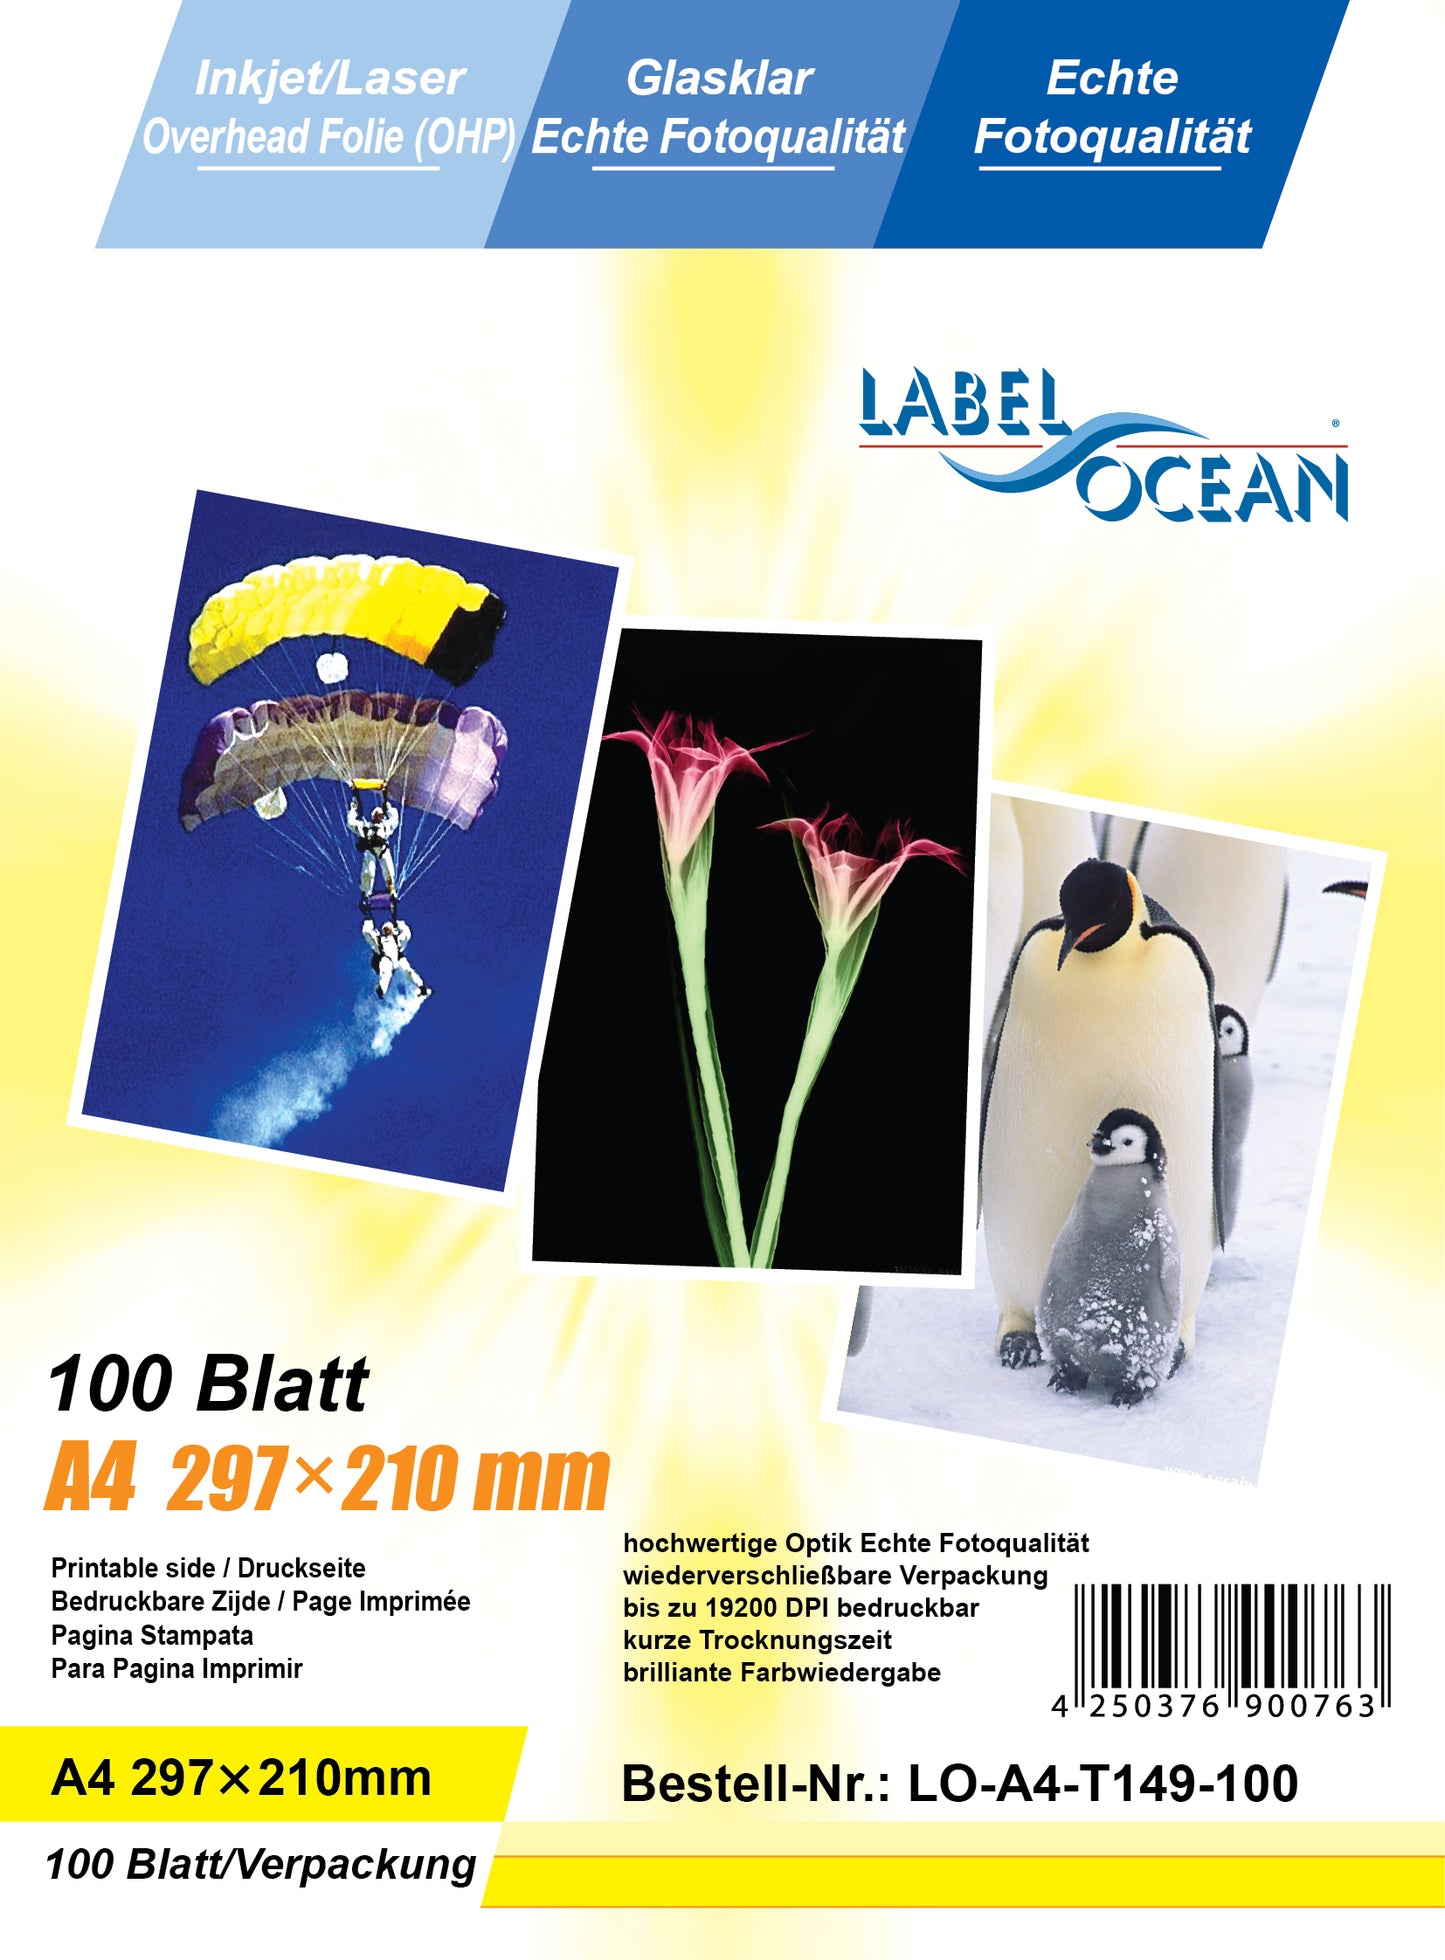 100 feuilles de film transparent A4 LO-A4-T1149-100 (OHP) cristal-clair pour imprimantes jet d'encre